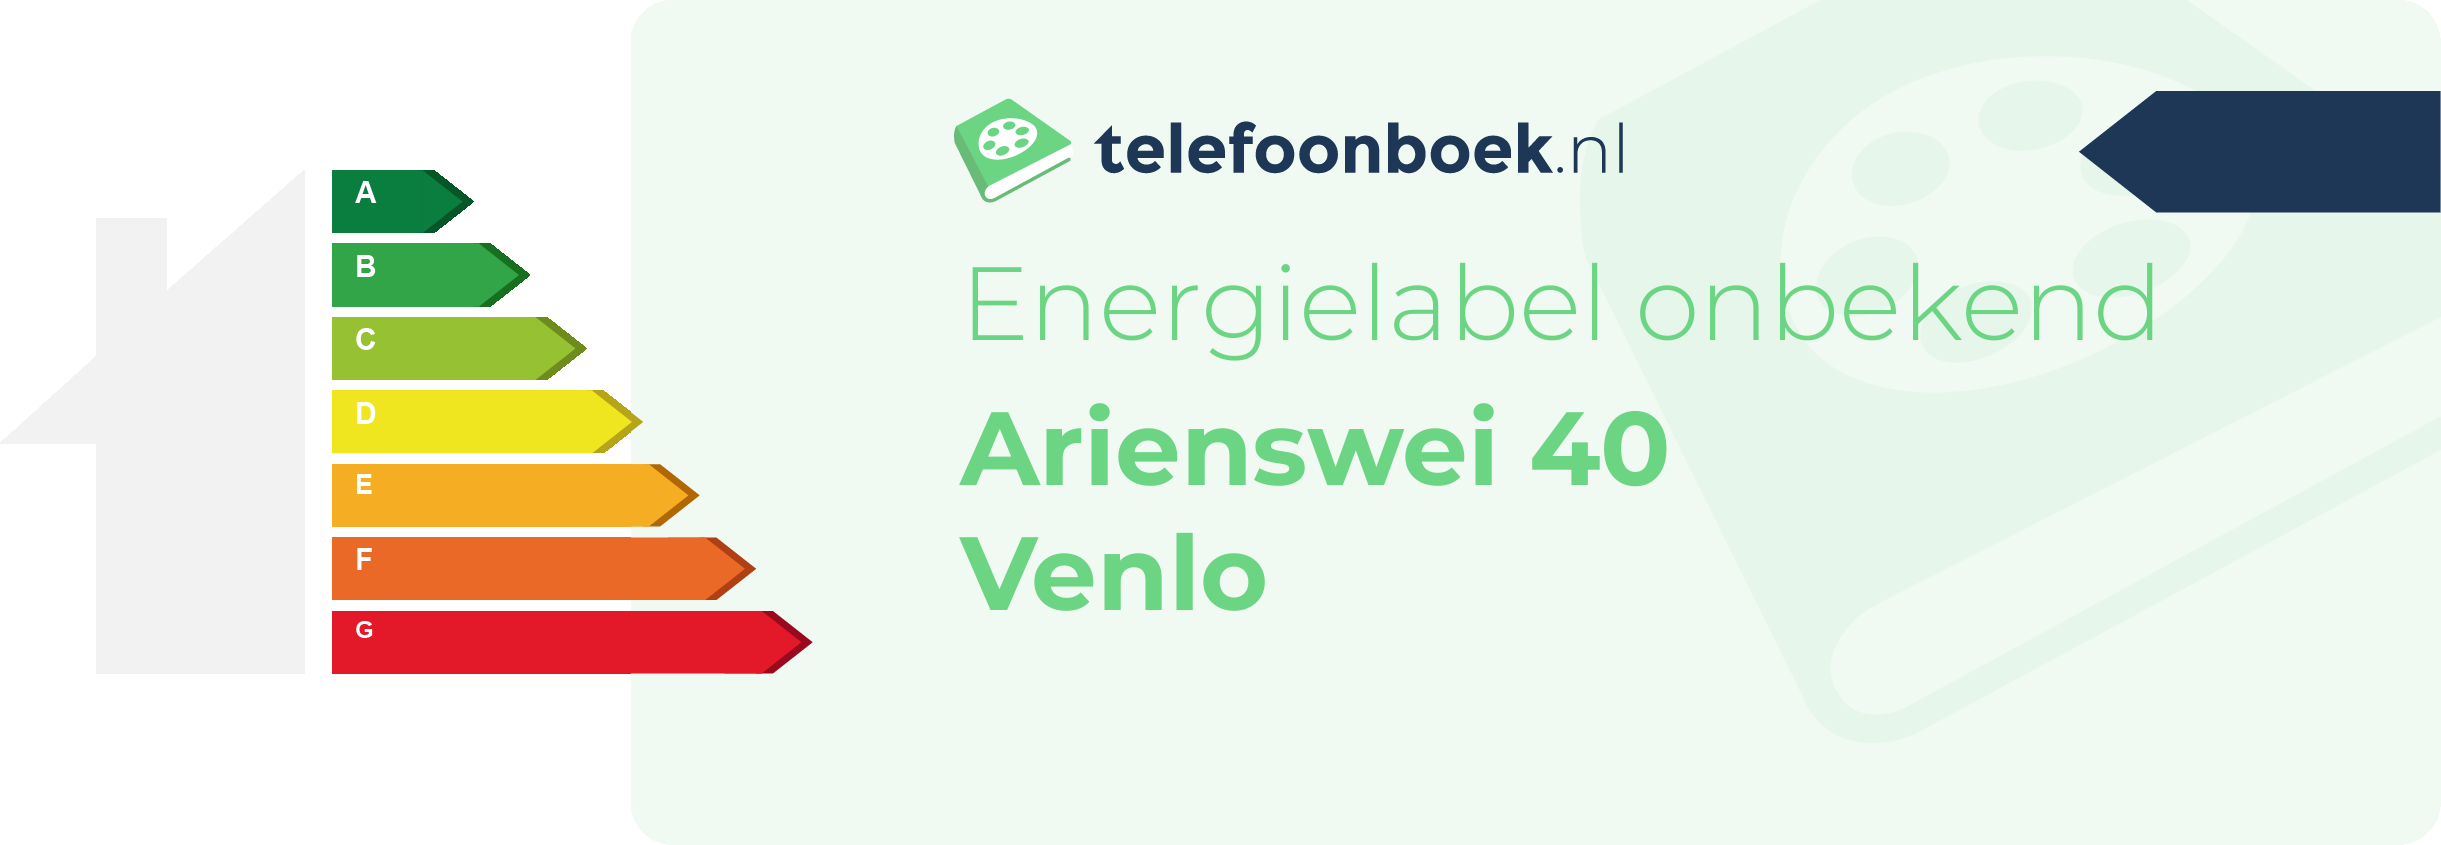 Energielabel Arienswei 40 Venlo